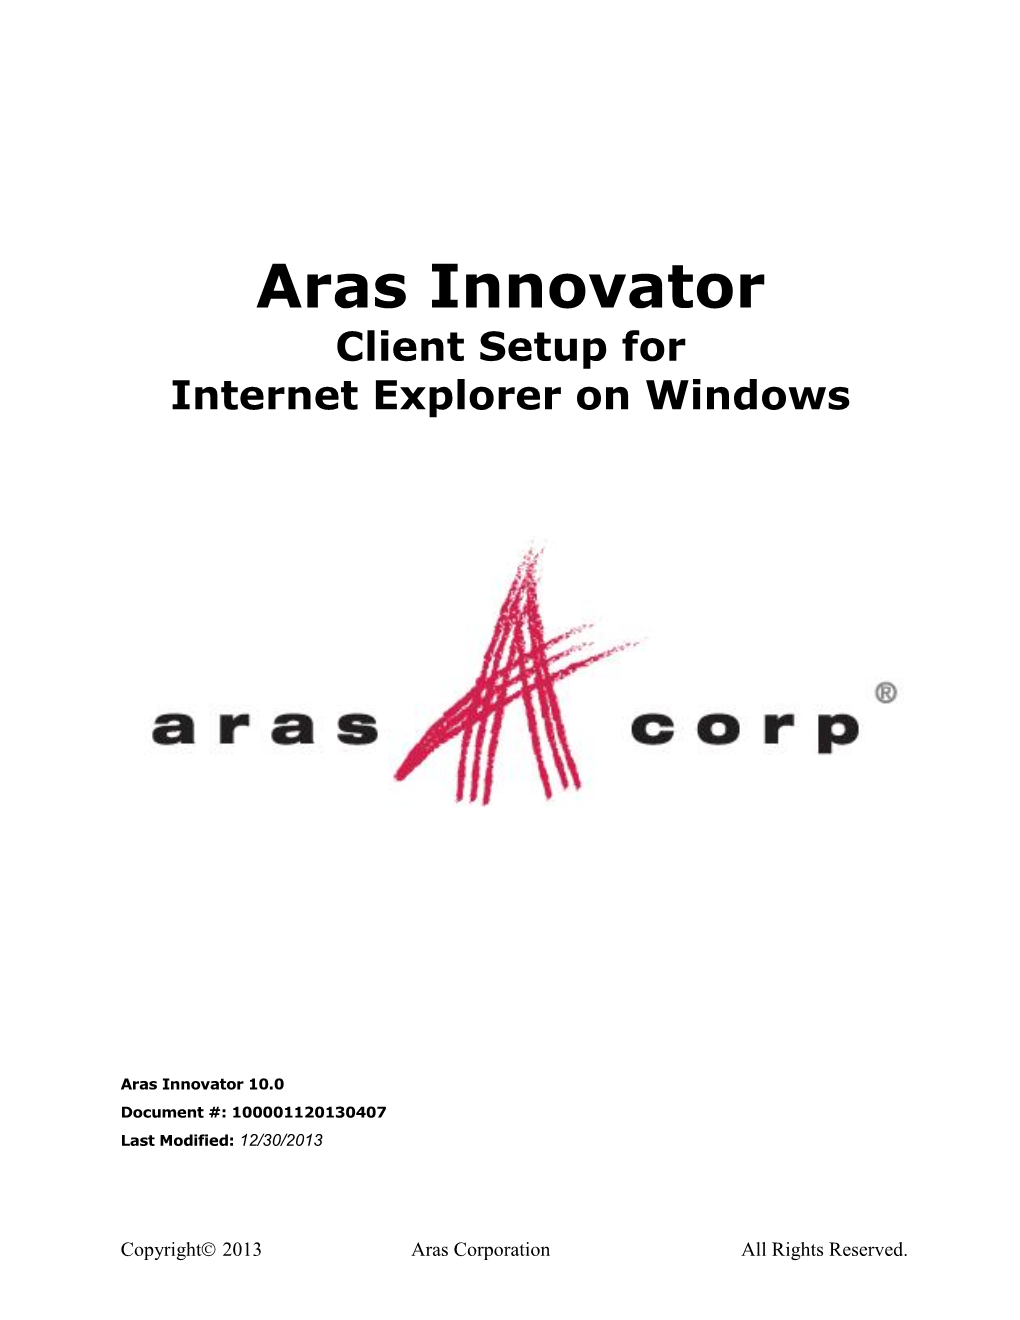 Aras Innovator 10.0 Client Settings for Internet Explorer on Windows